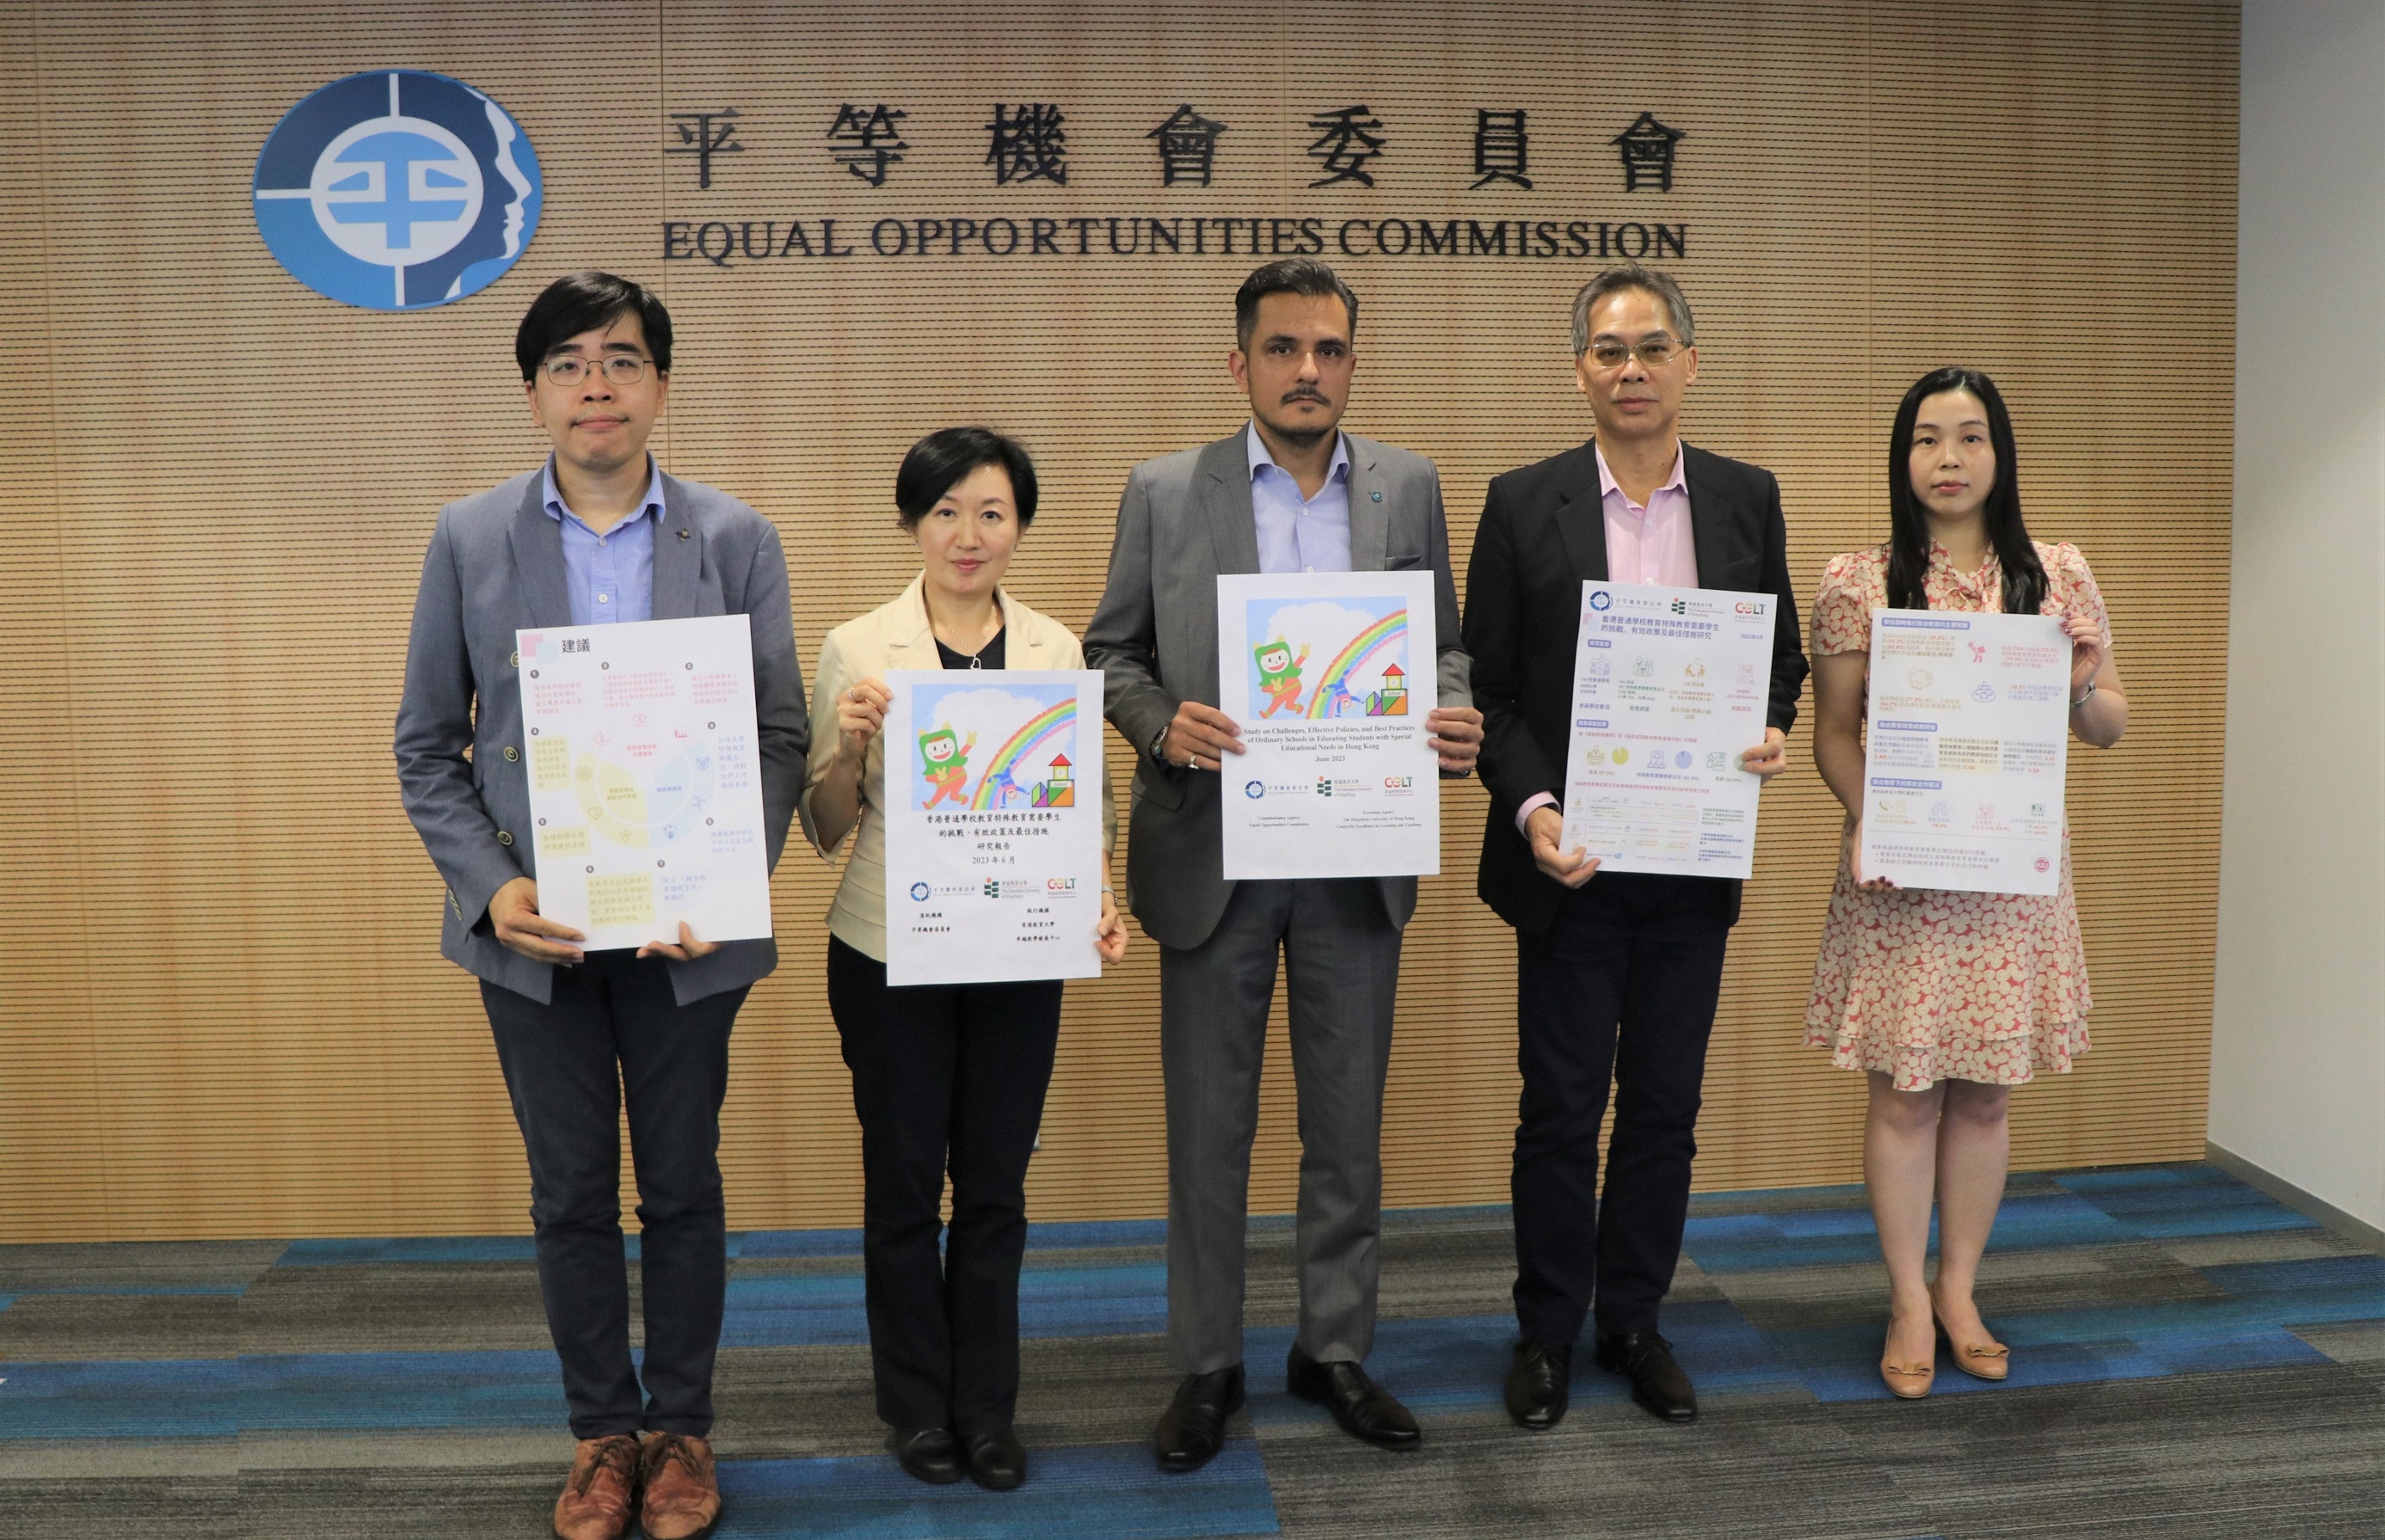 平機會代表及研究團隊在新聞發布會介紹「香港普通學校教育特殊教育需要學生的挑戰、有效政策及最佳措施研究」的結果。